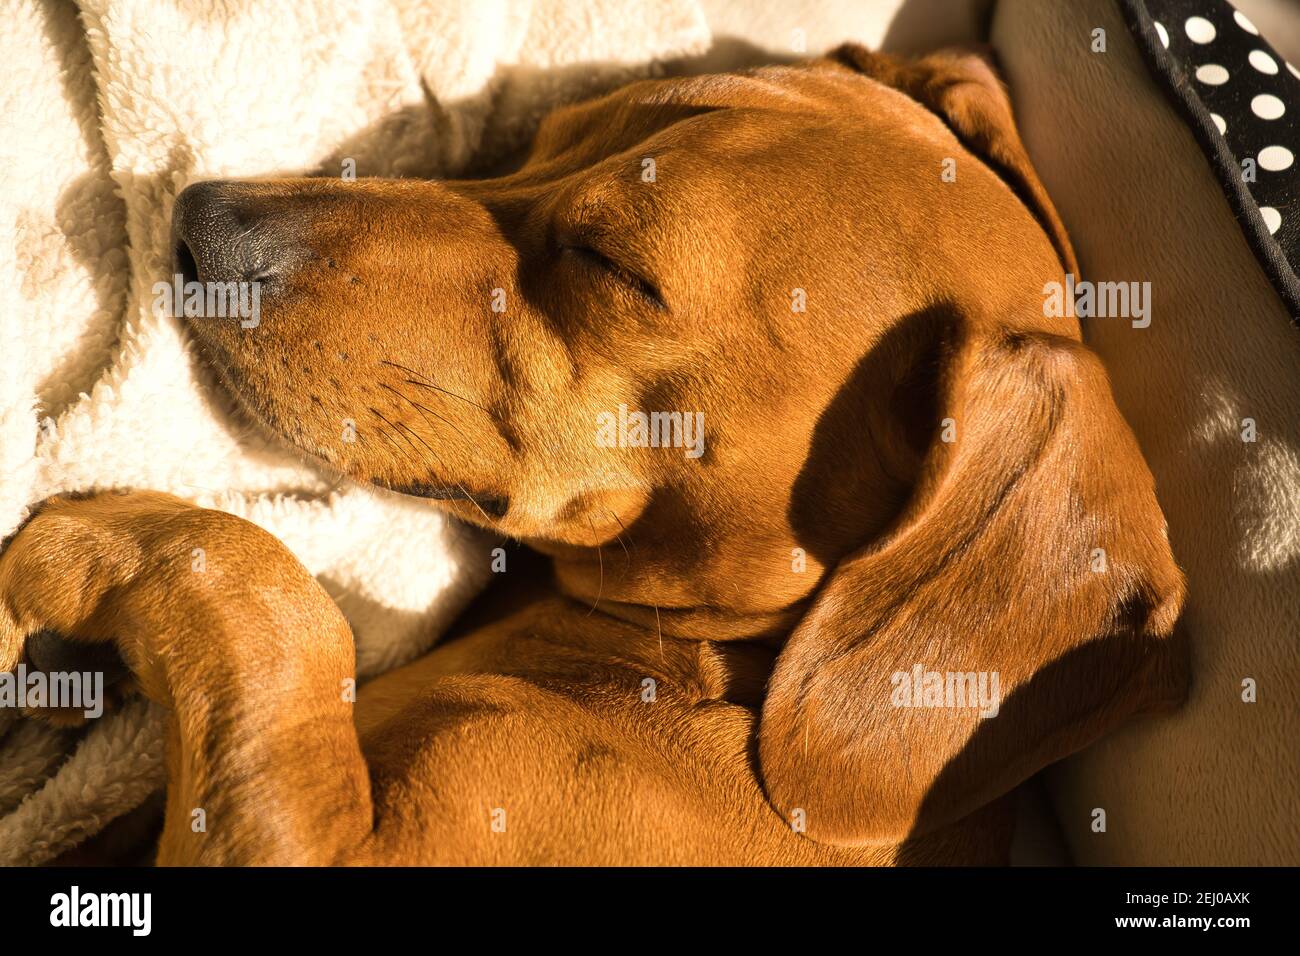 Bellissimo cane dachshund purebred, chiamato anche un teckel, cane viennese, o cane salsiccia, che pende su un letto di cane. Cane che dorme Foto Stock